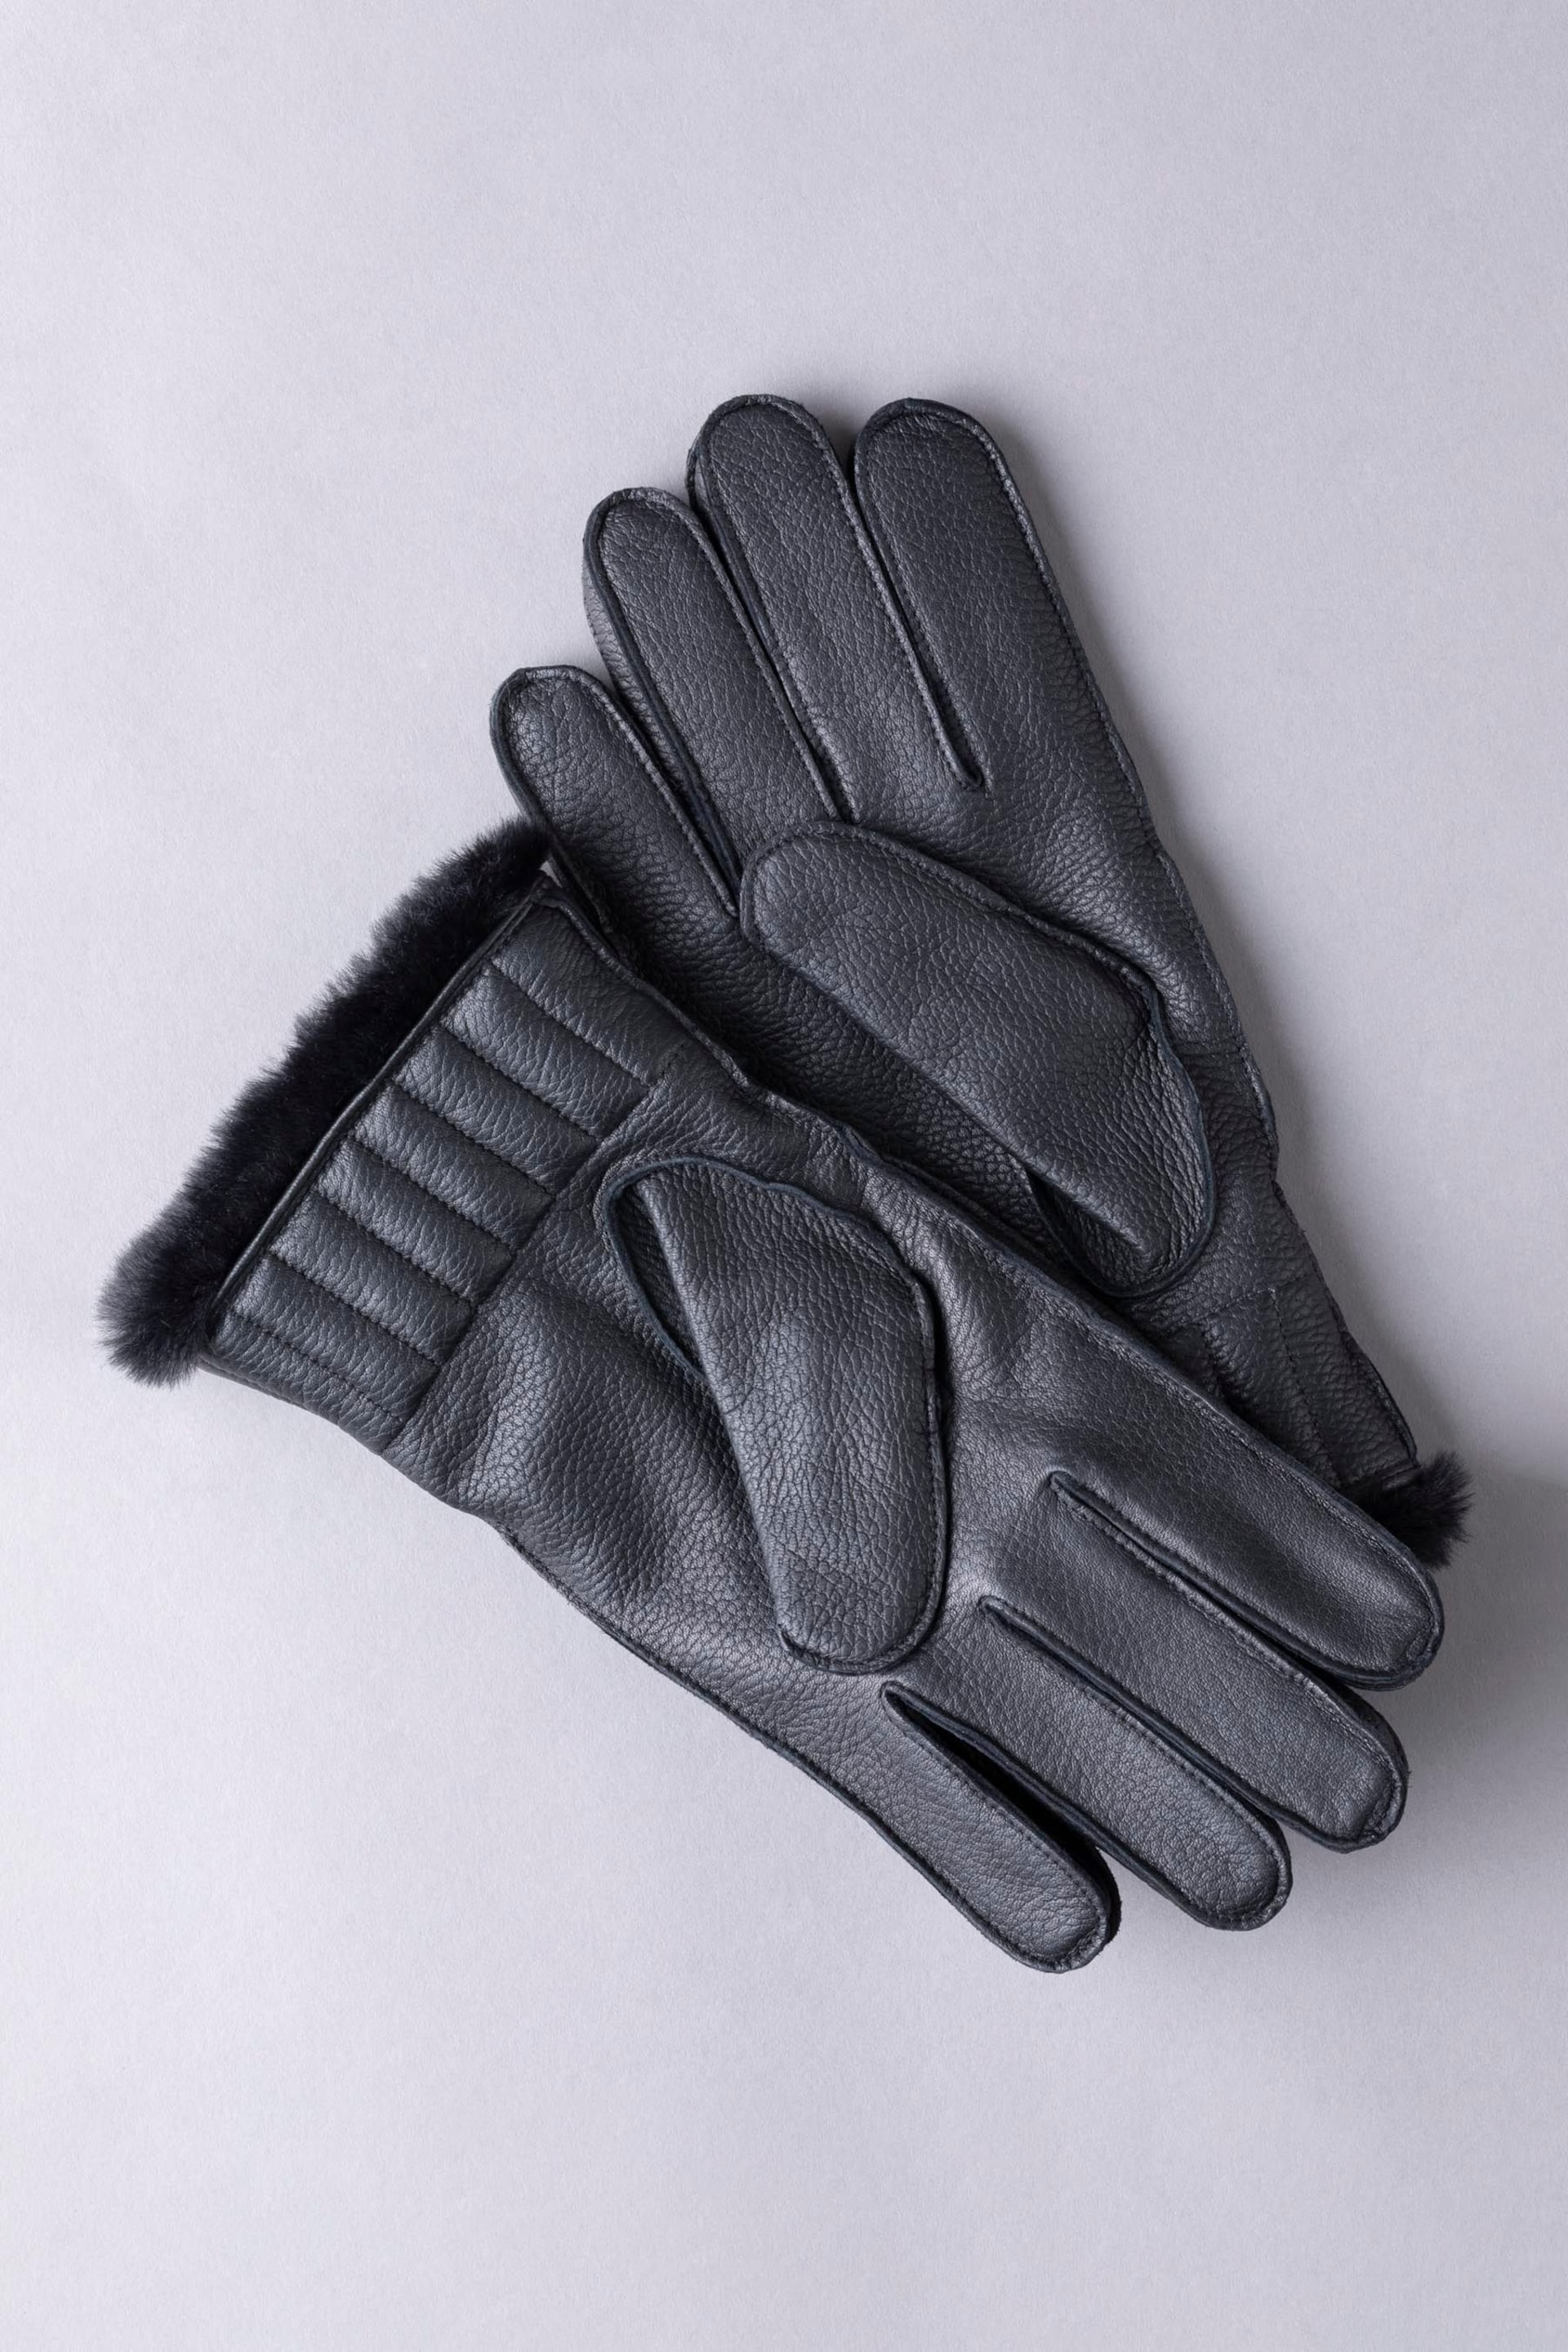 Lakeland Leather Milne Leather Gloves - Image 2 of 3